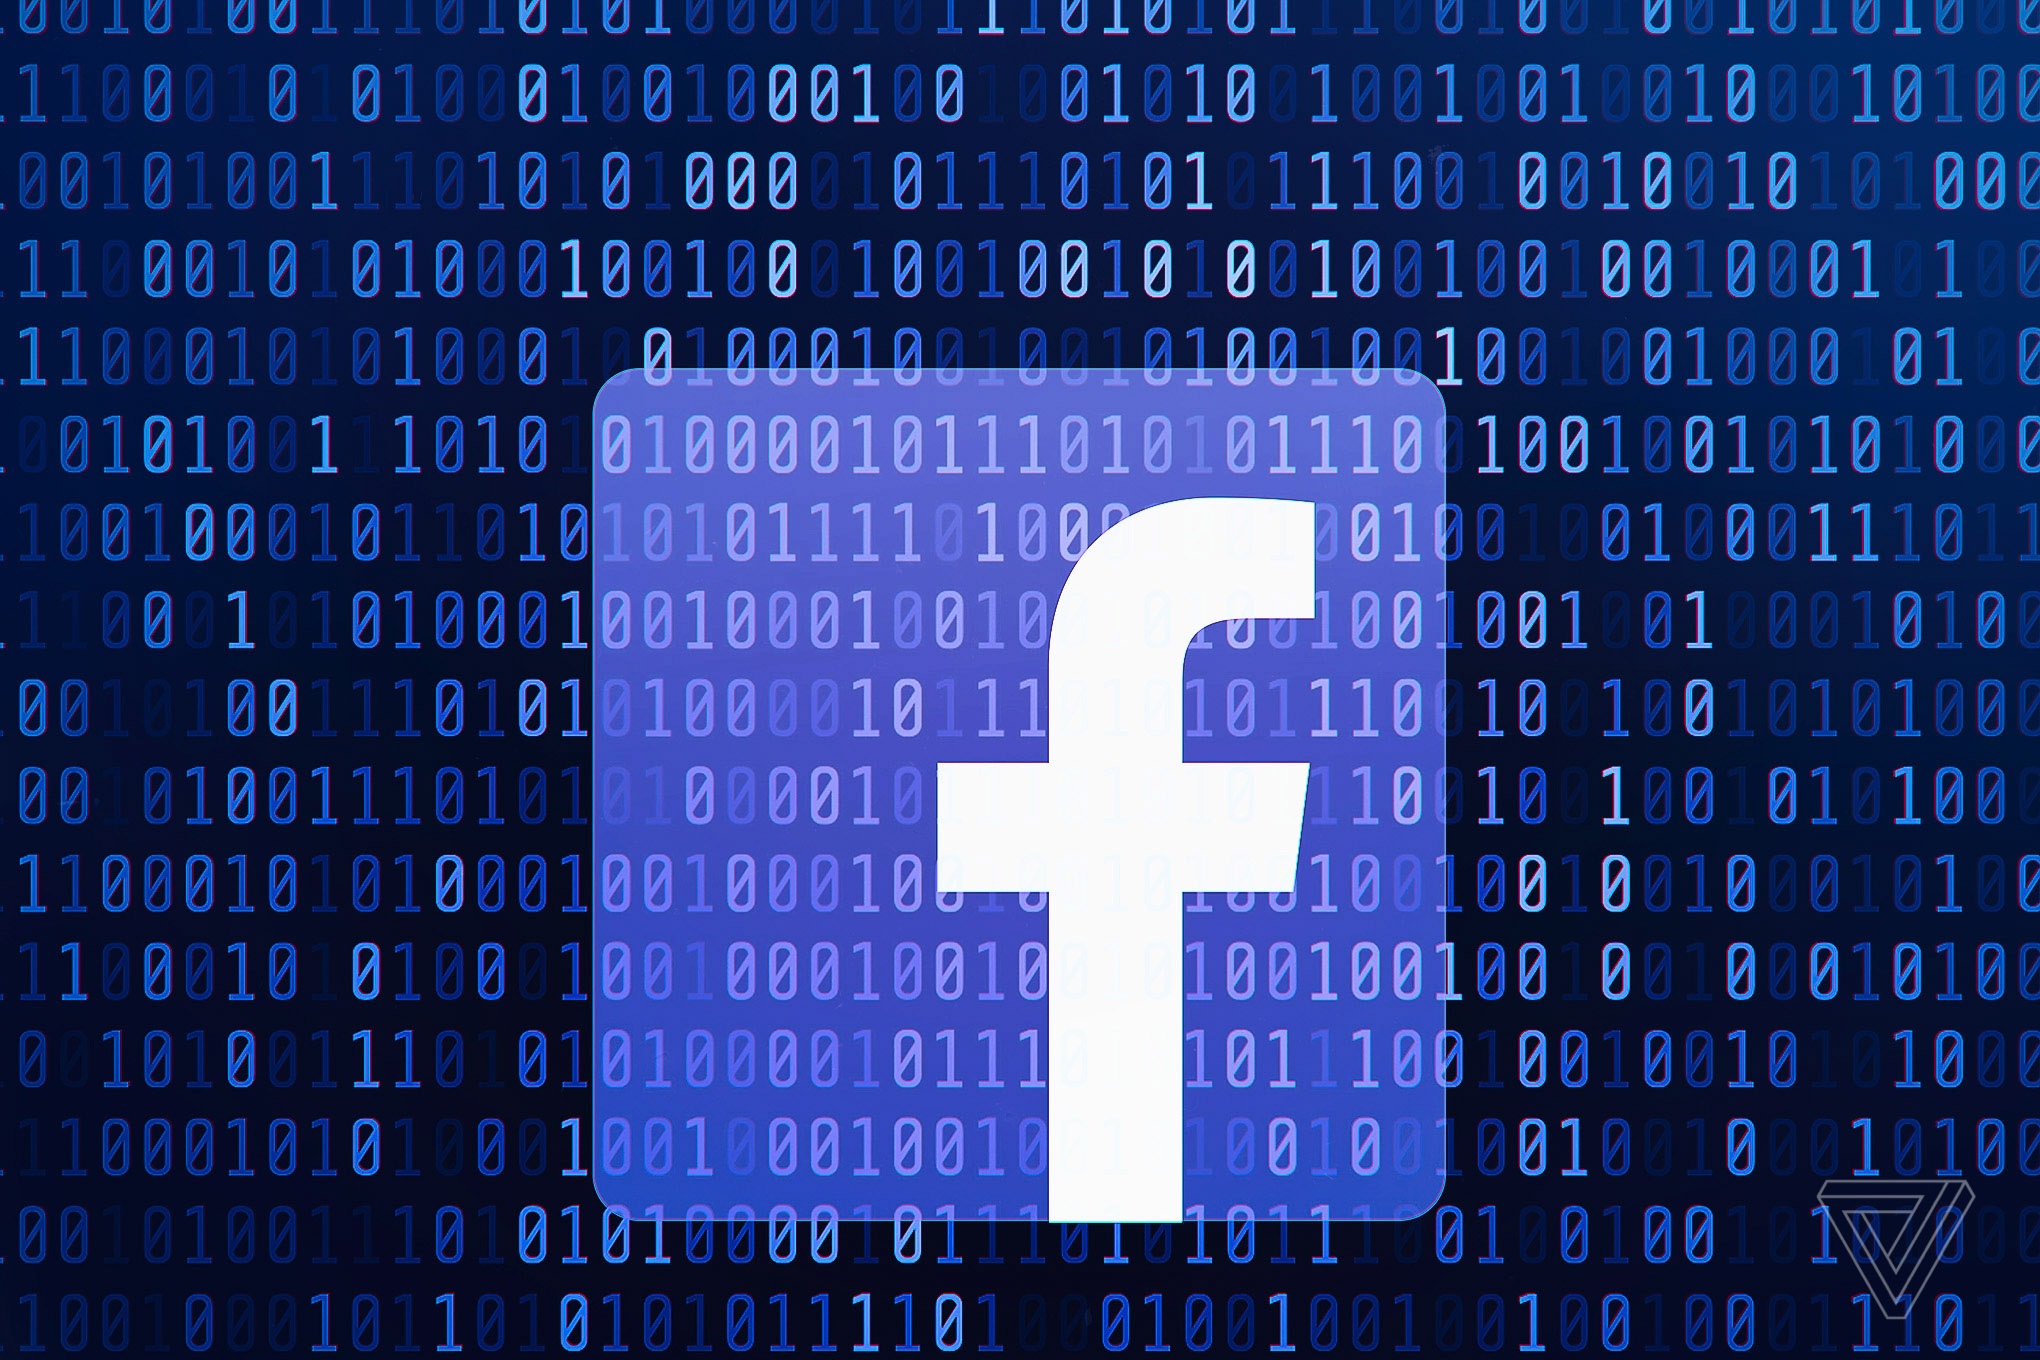 Facebook âm thầm thay đổi khẩu hiệu, không còn “miễn phí” như trước